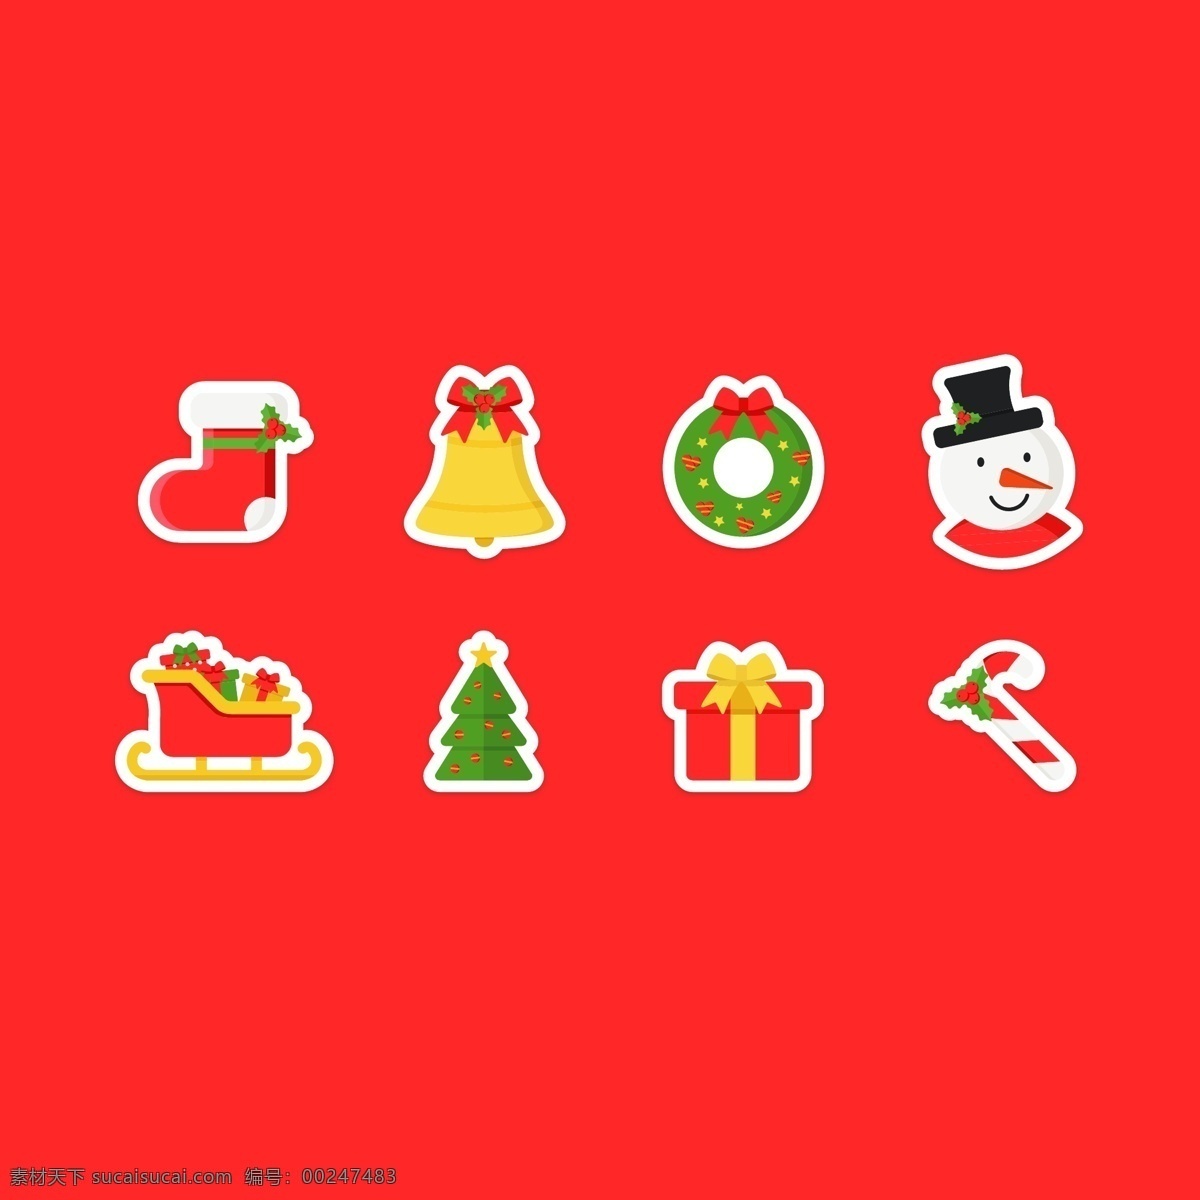 贴纸 样式 圣诞 元素 彩色 卡通 圣诞树 礼物 圣诞节 圣诞袜 铃铛 雪人 花环 糖果 节日元素